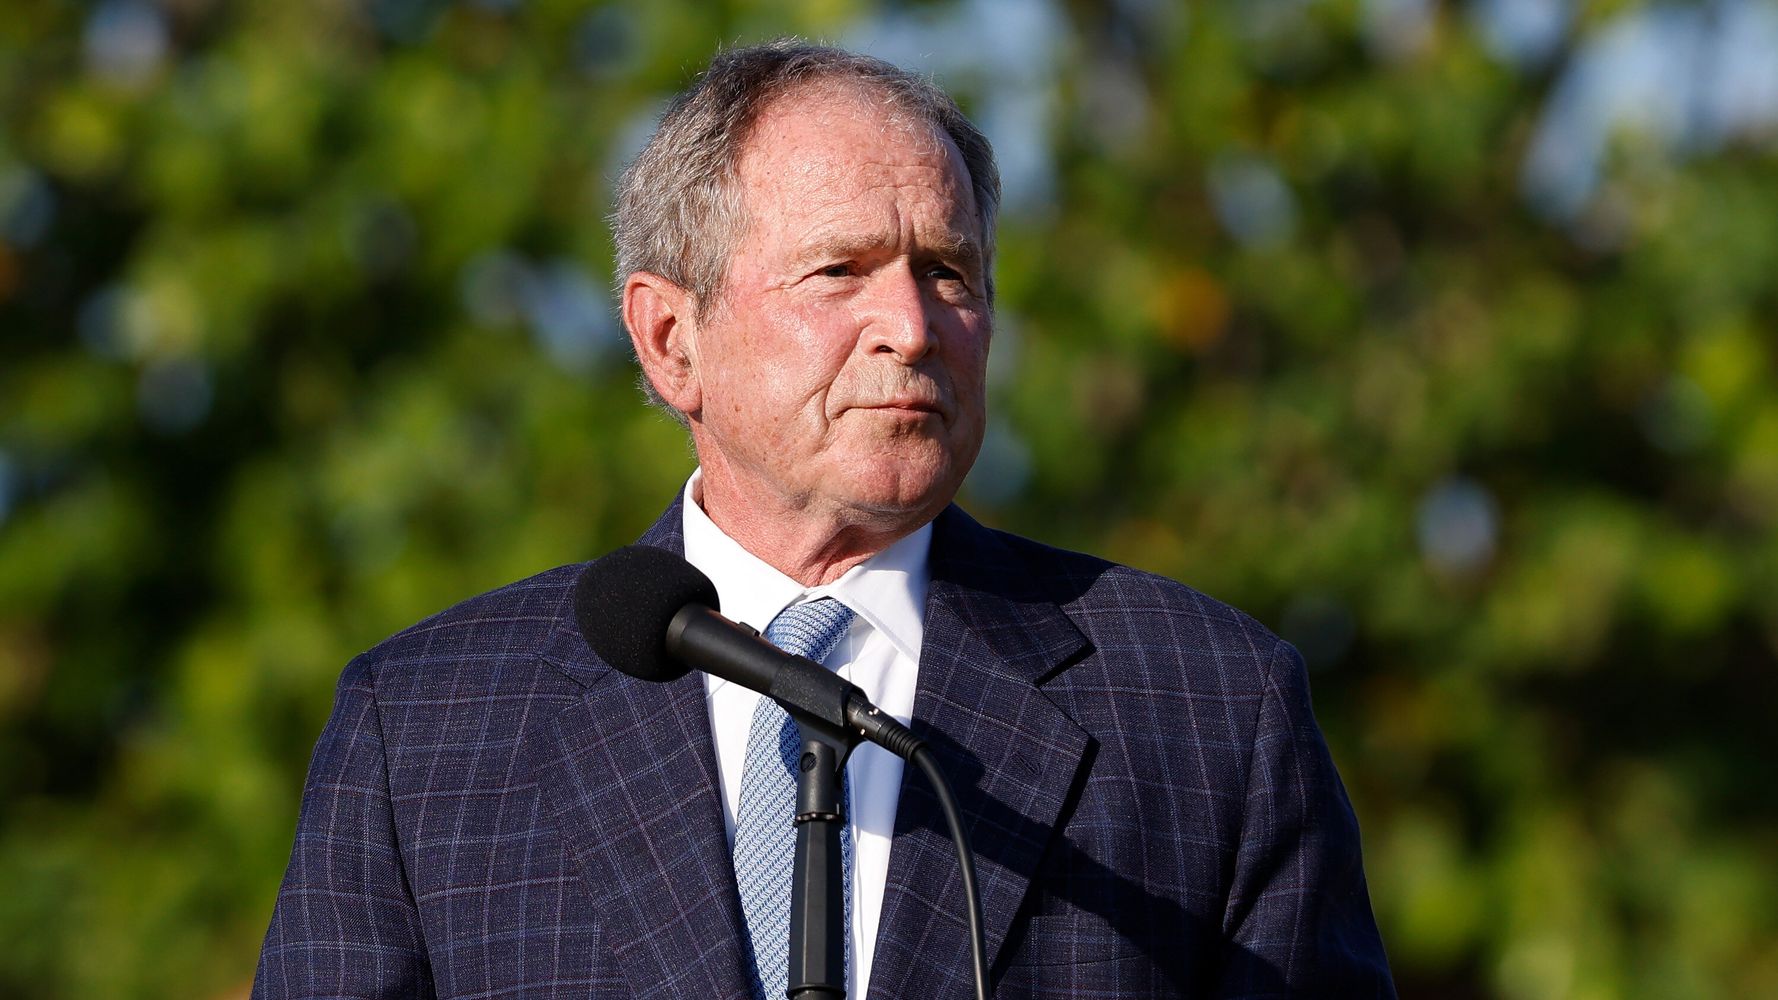 George W. Bush Urges Safe Haven For Afghan Refugees, Shares 'Deep Sadness'